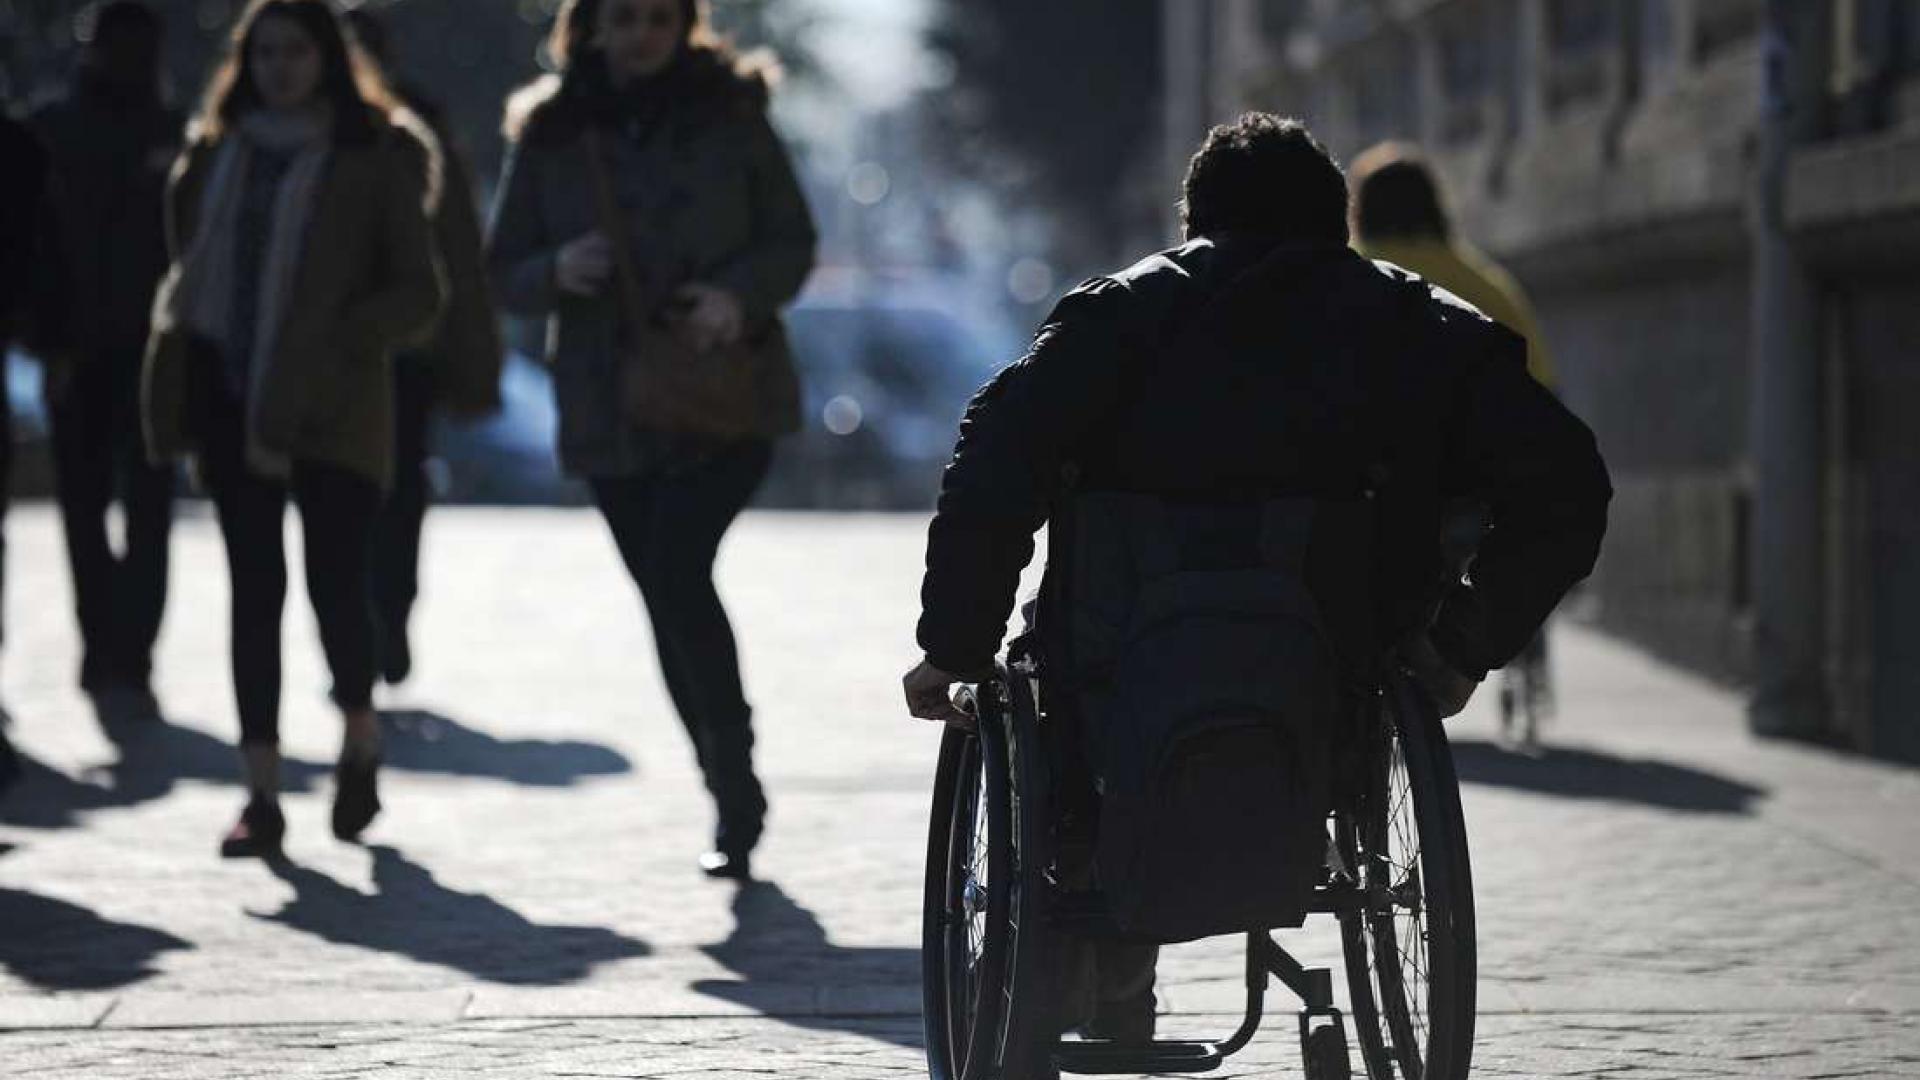 مكني: 3 ملايين شخص في وضعية إعاقة يستحقون مكانة ببرامج الأحزاب